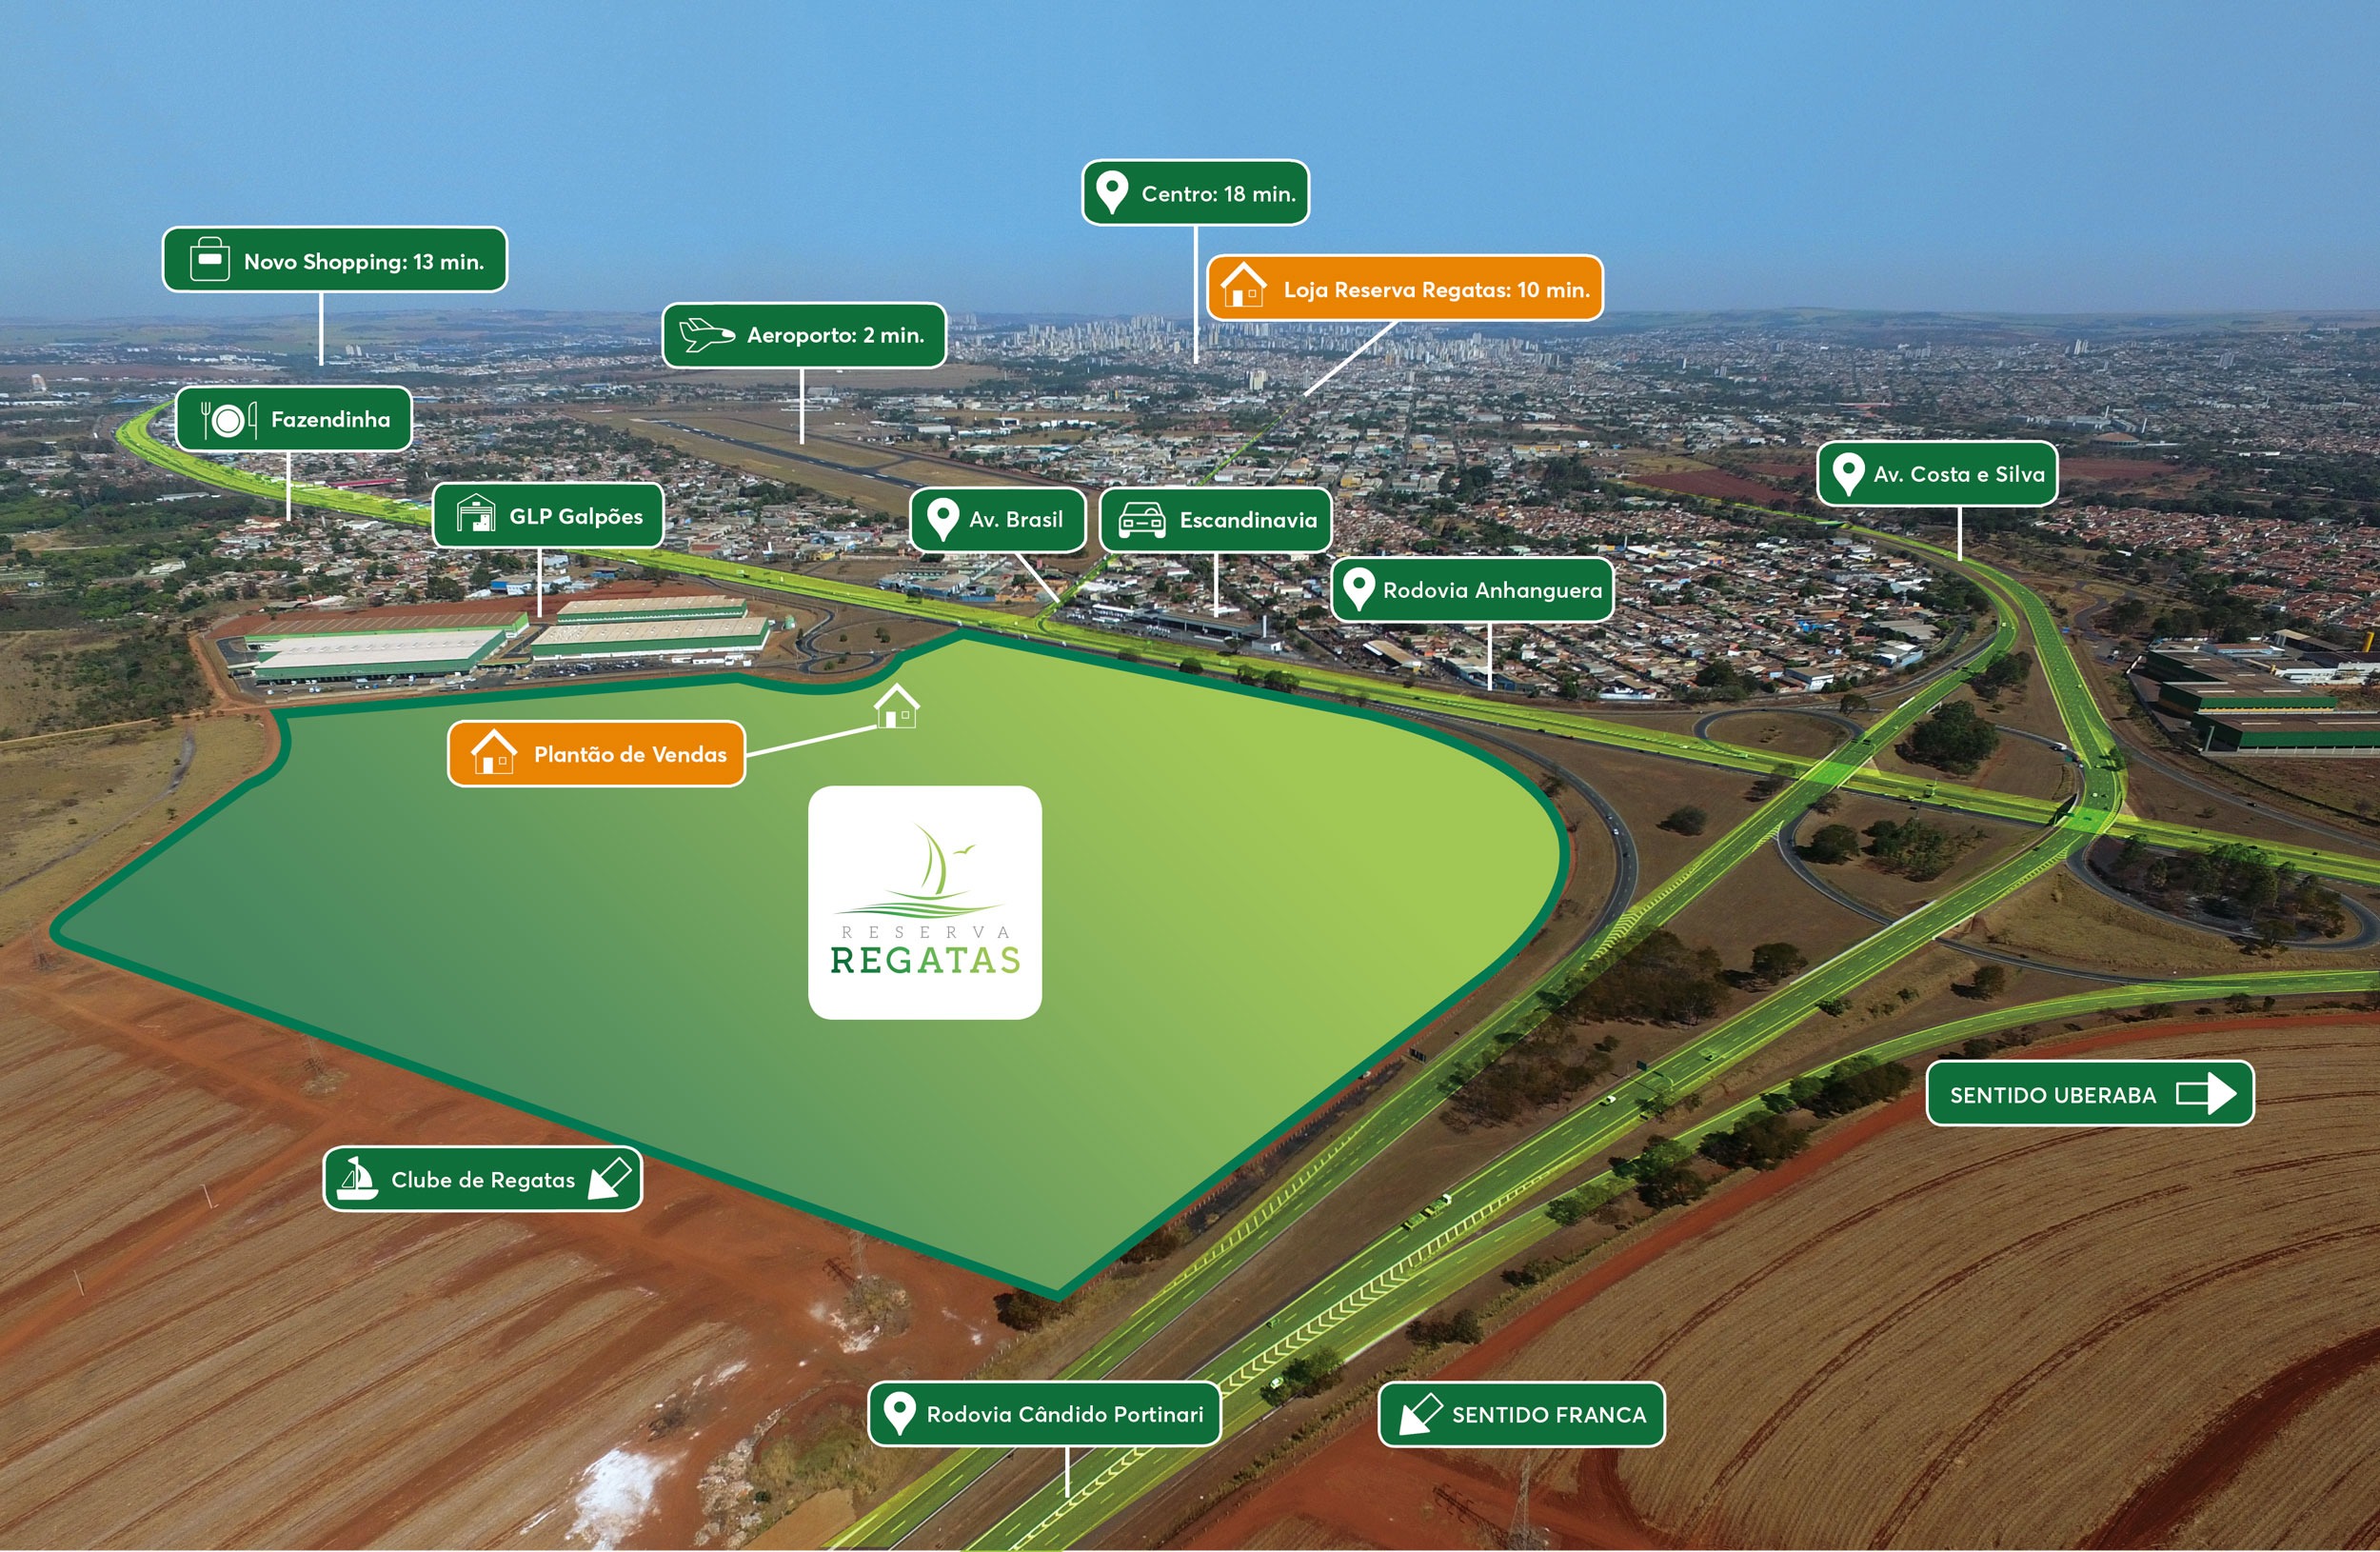 Lote industrial para venda na Zona Norte nas margens da Rodovia Anhanguera  com a Candido Portinari, lote com 480 m2 bairro planejado, Reserva Regatas